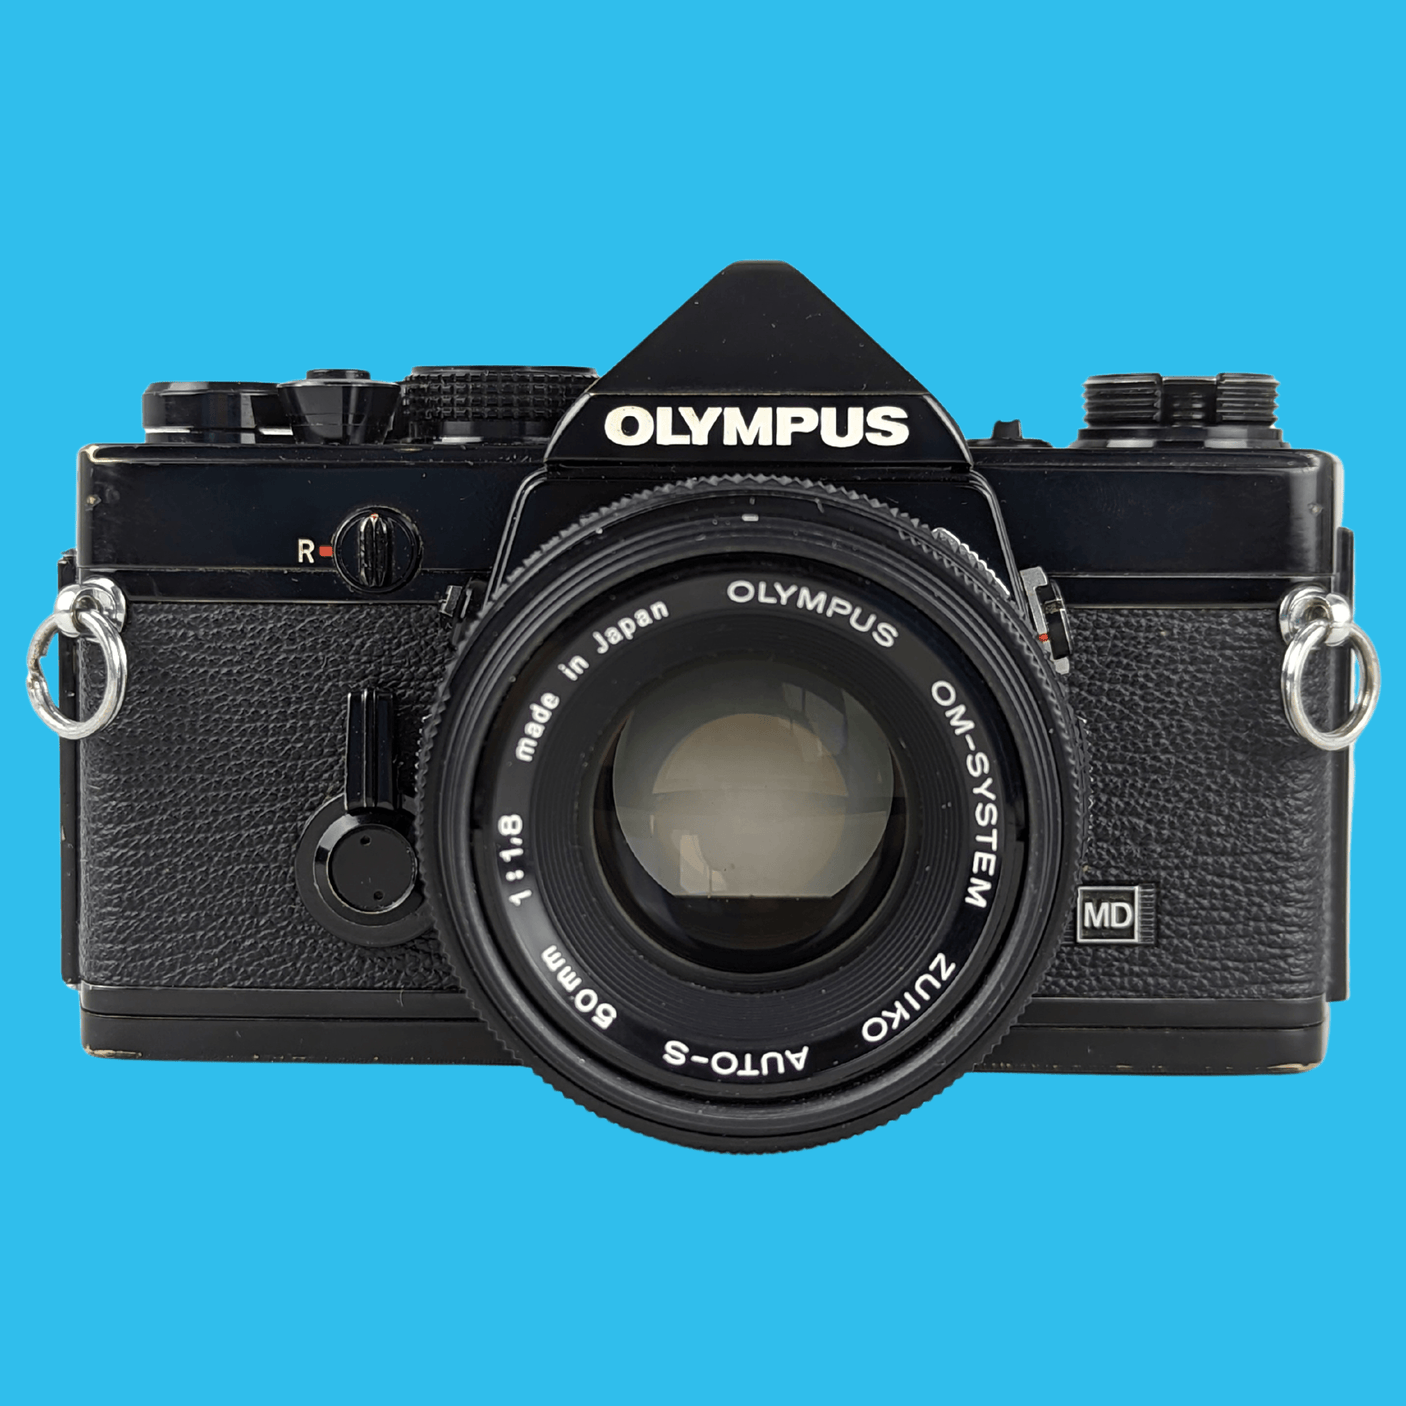 Olympus OM 1 Black Vintage 35mm SLR Film Camera with f/1.8 50mm Prime Lens